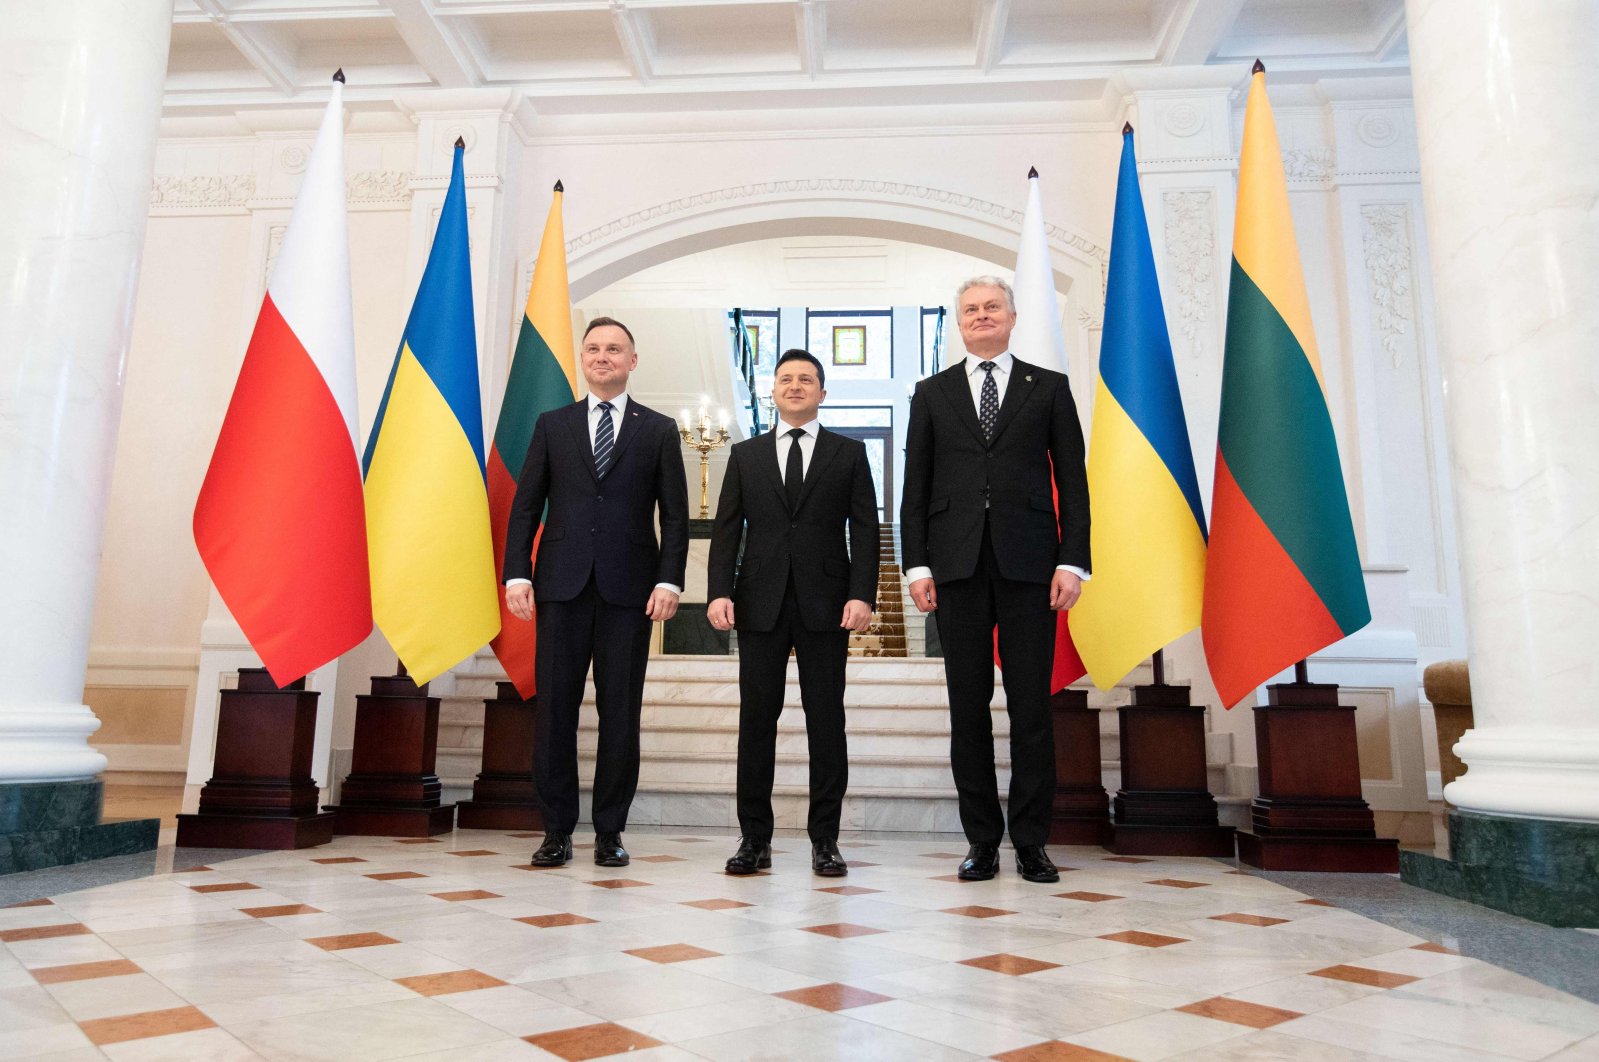 Polandia, Lithuania mendukung Ukraina, mendesak sanksi terhadap Rusia